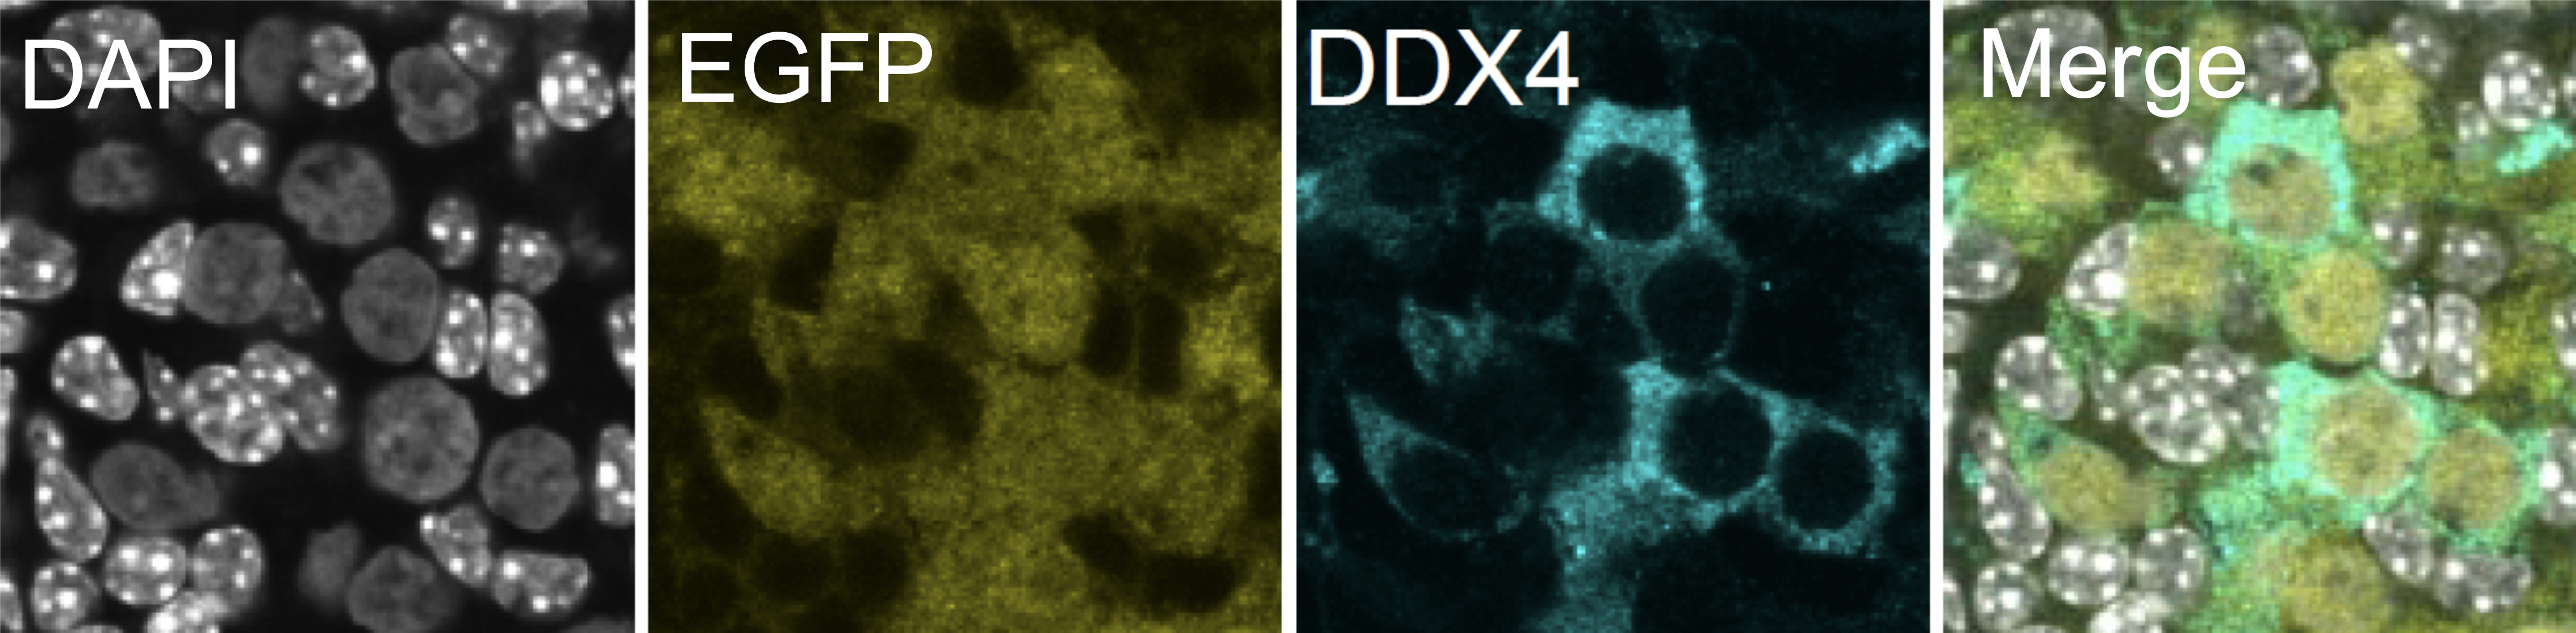 増殖したヒト始原生殖細胞様細胞(EGFP陽性、黄色)は再構成卵巣内で卵原細胞様細胞(DDX4陽性、シアン)へと分化する